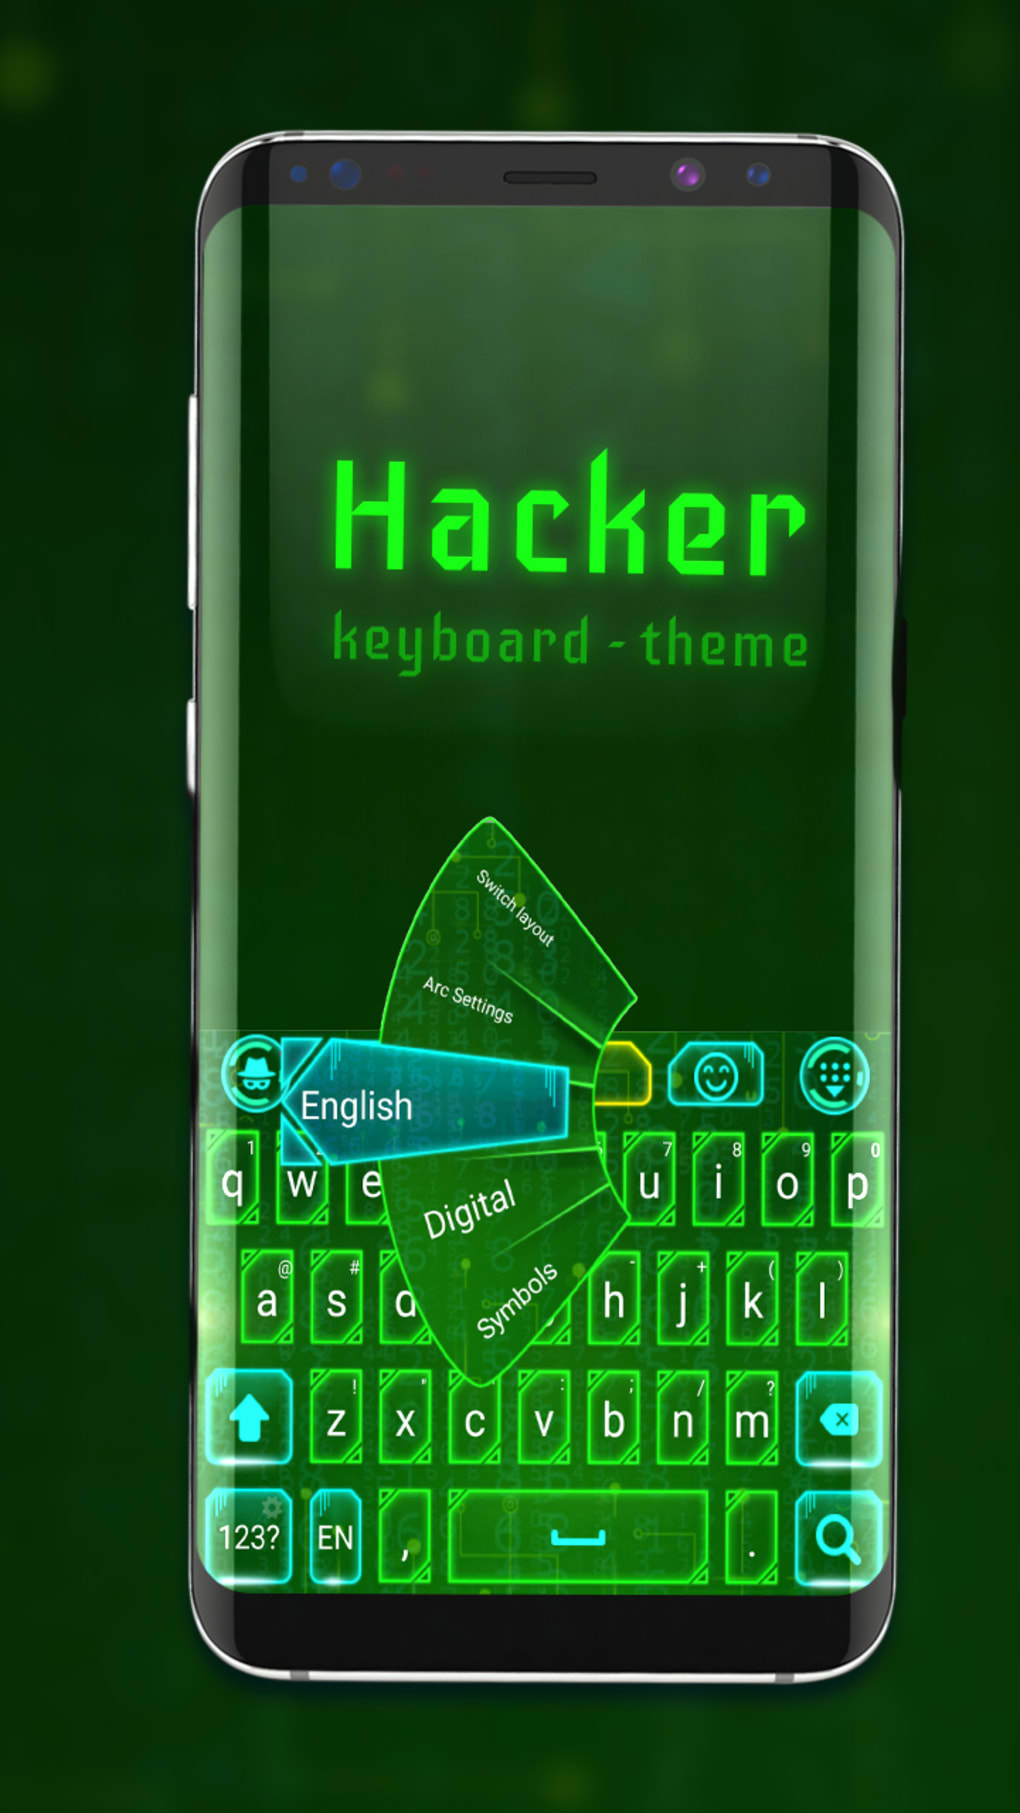 Hacker's Keyboard - Apps on Google Play